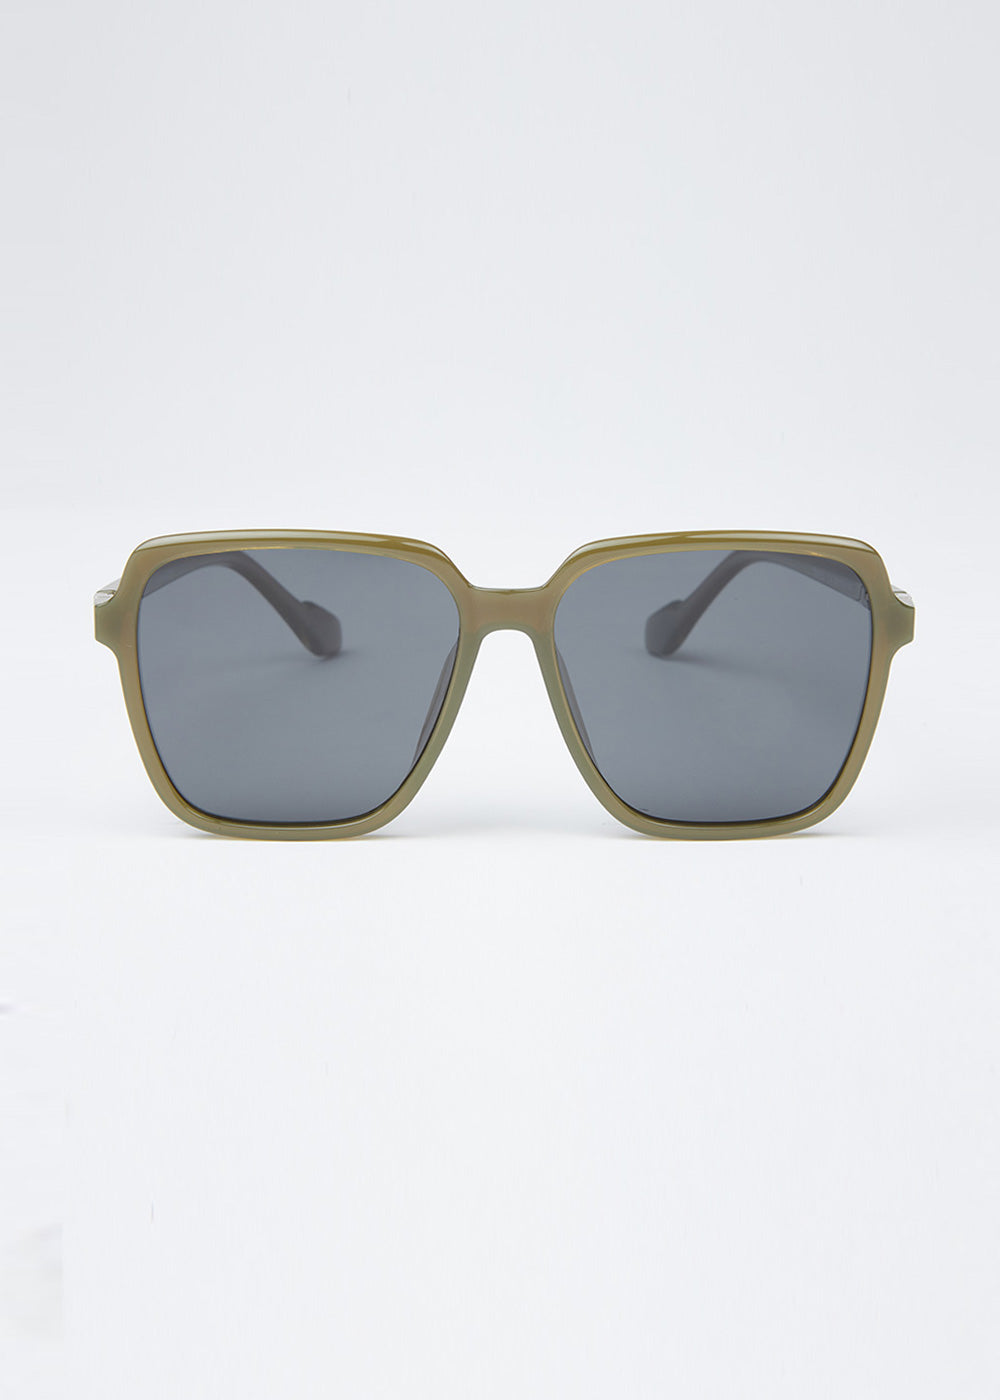 Olive Unisex Square Sunglasses